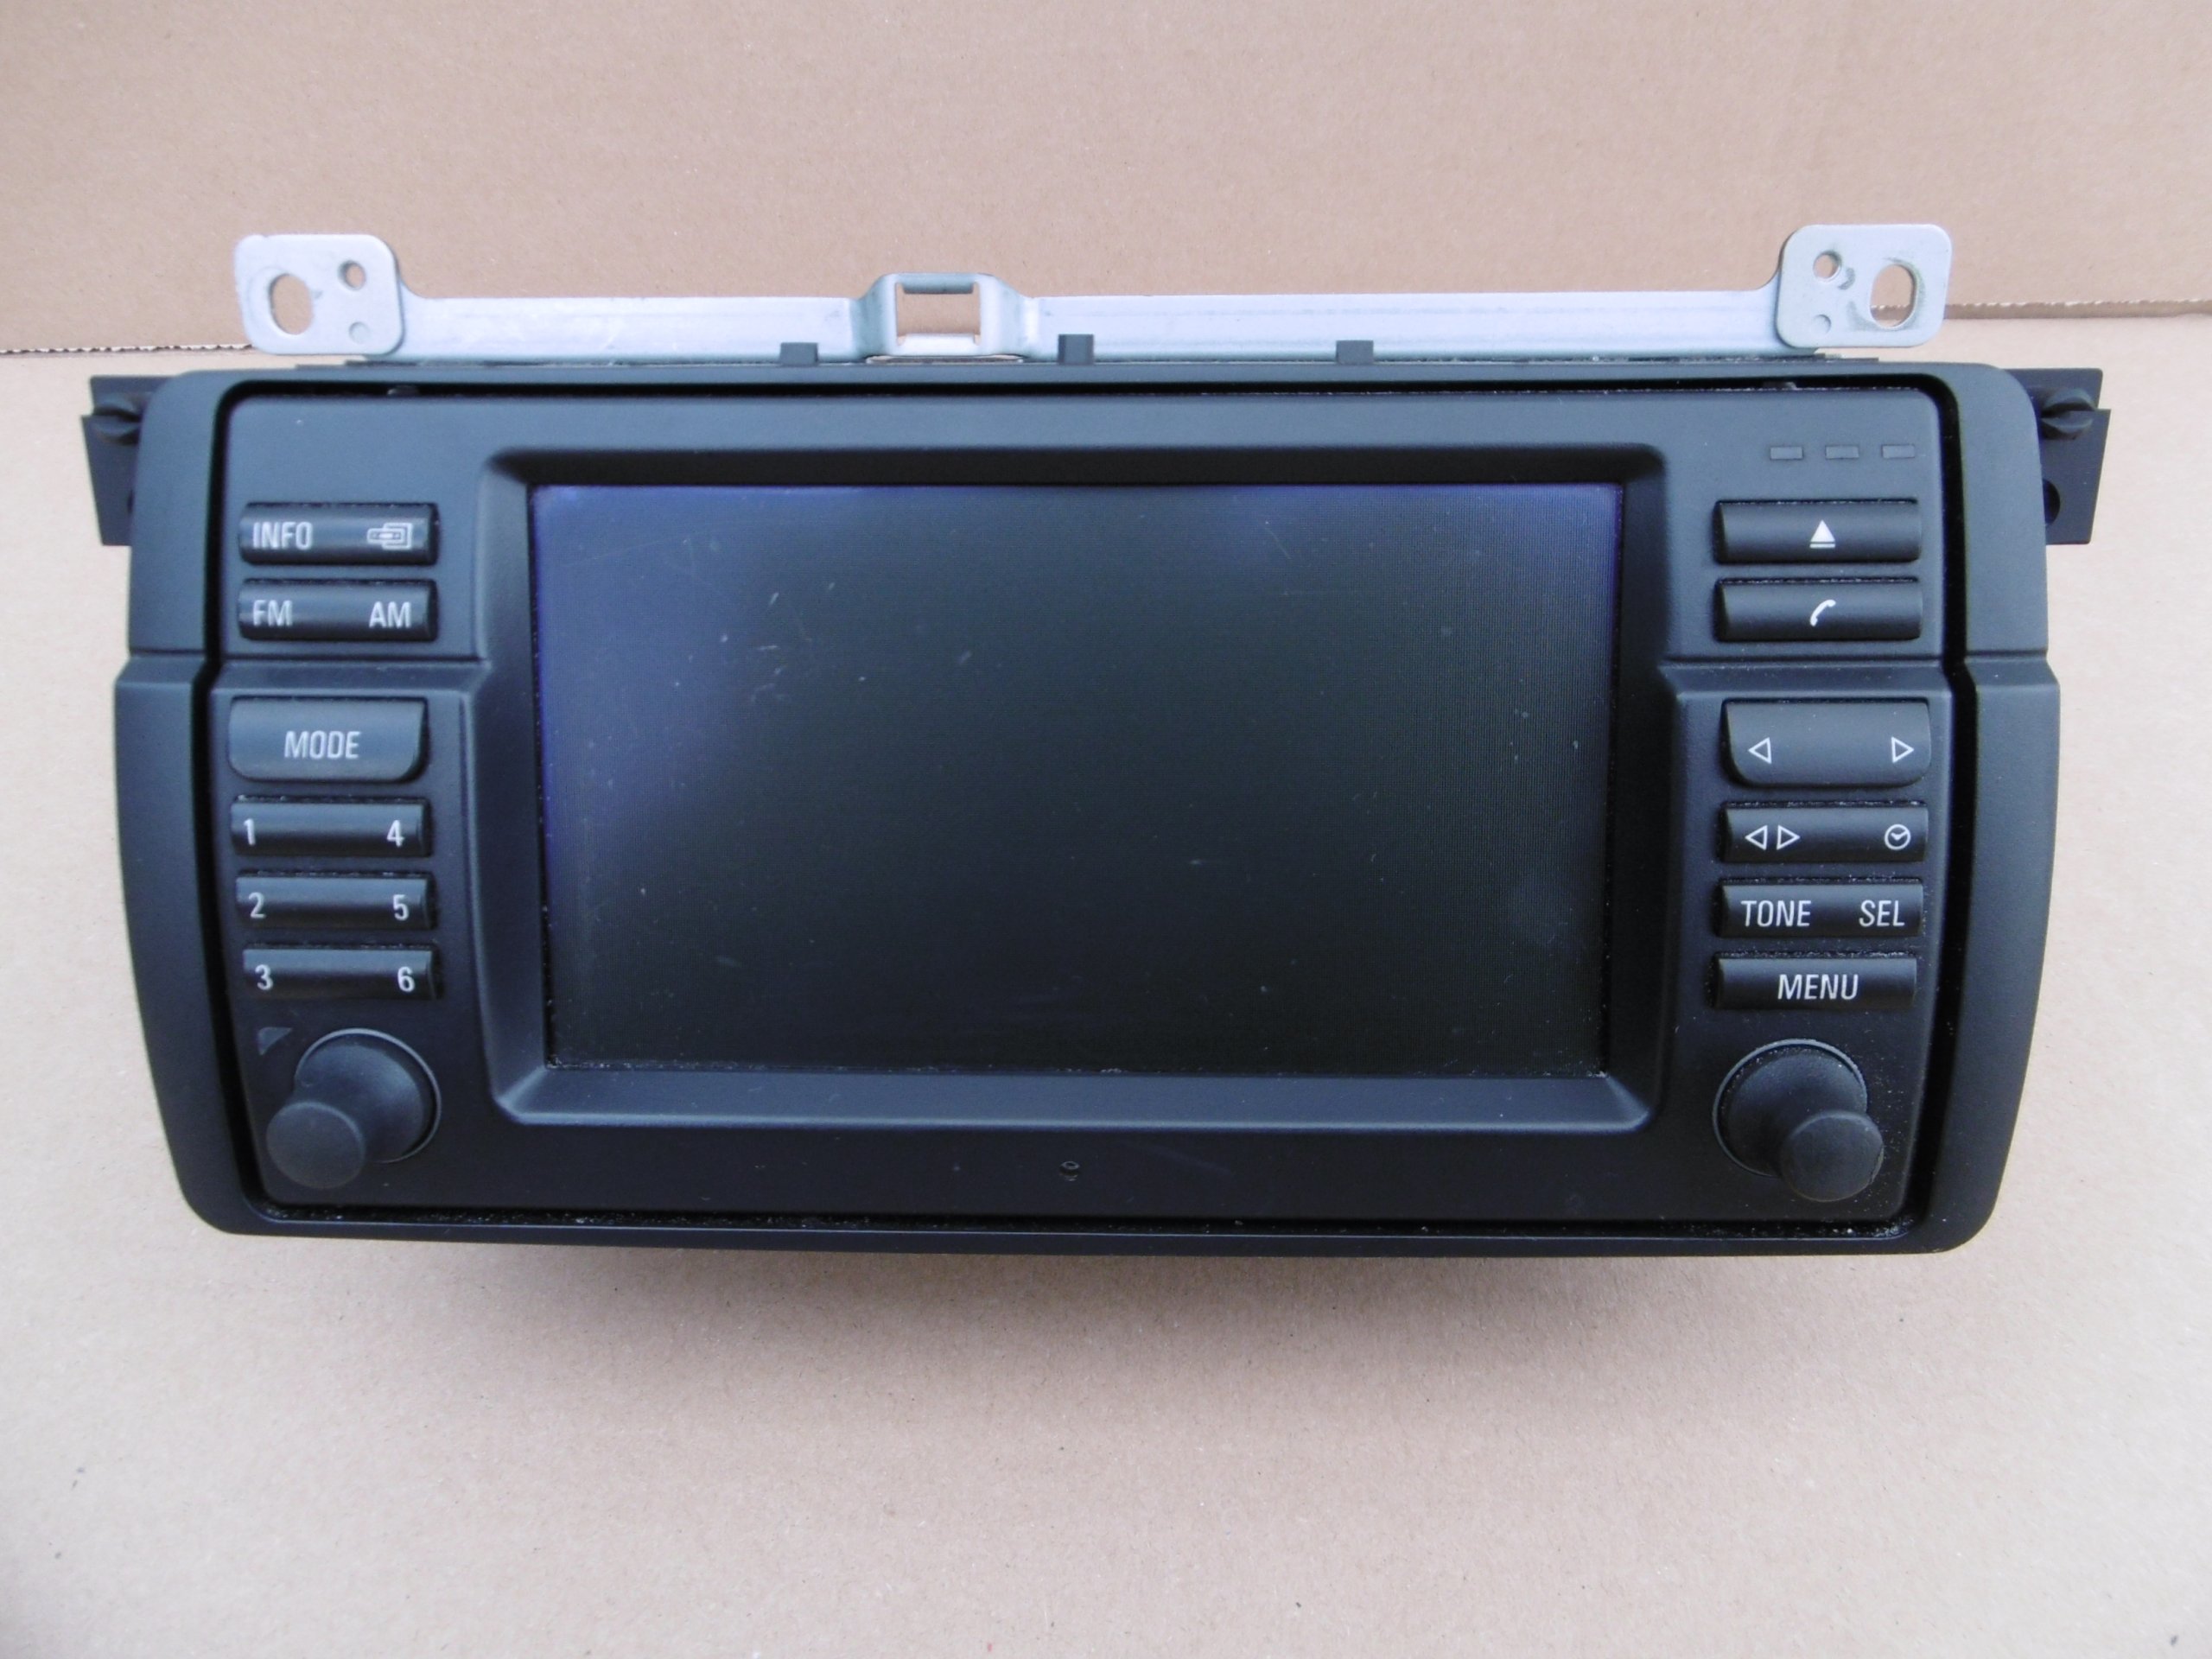 Monitor nawigacji wyświetlacz ekran 169 BMW E46